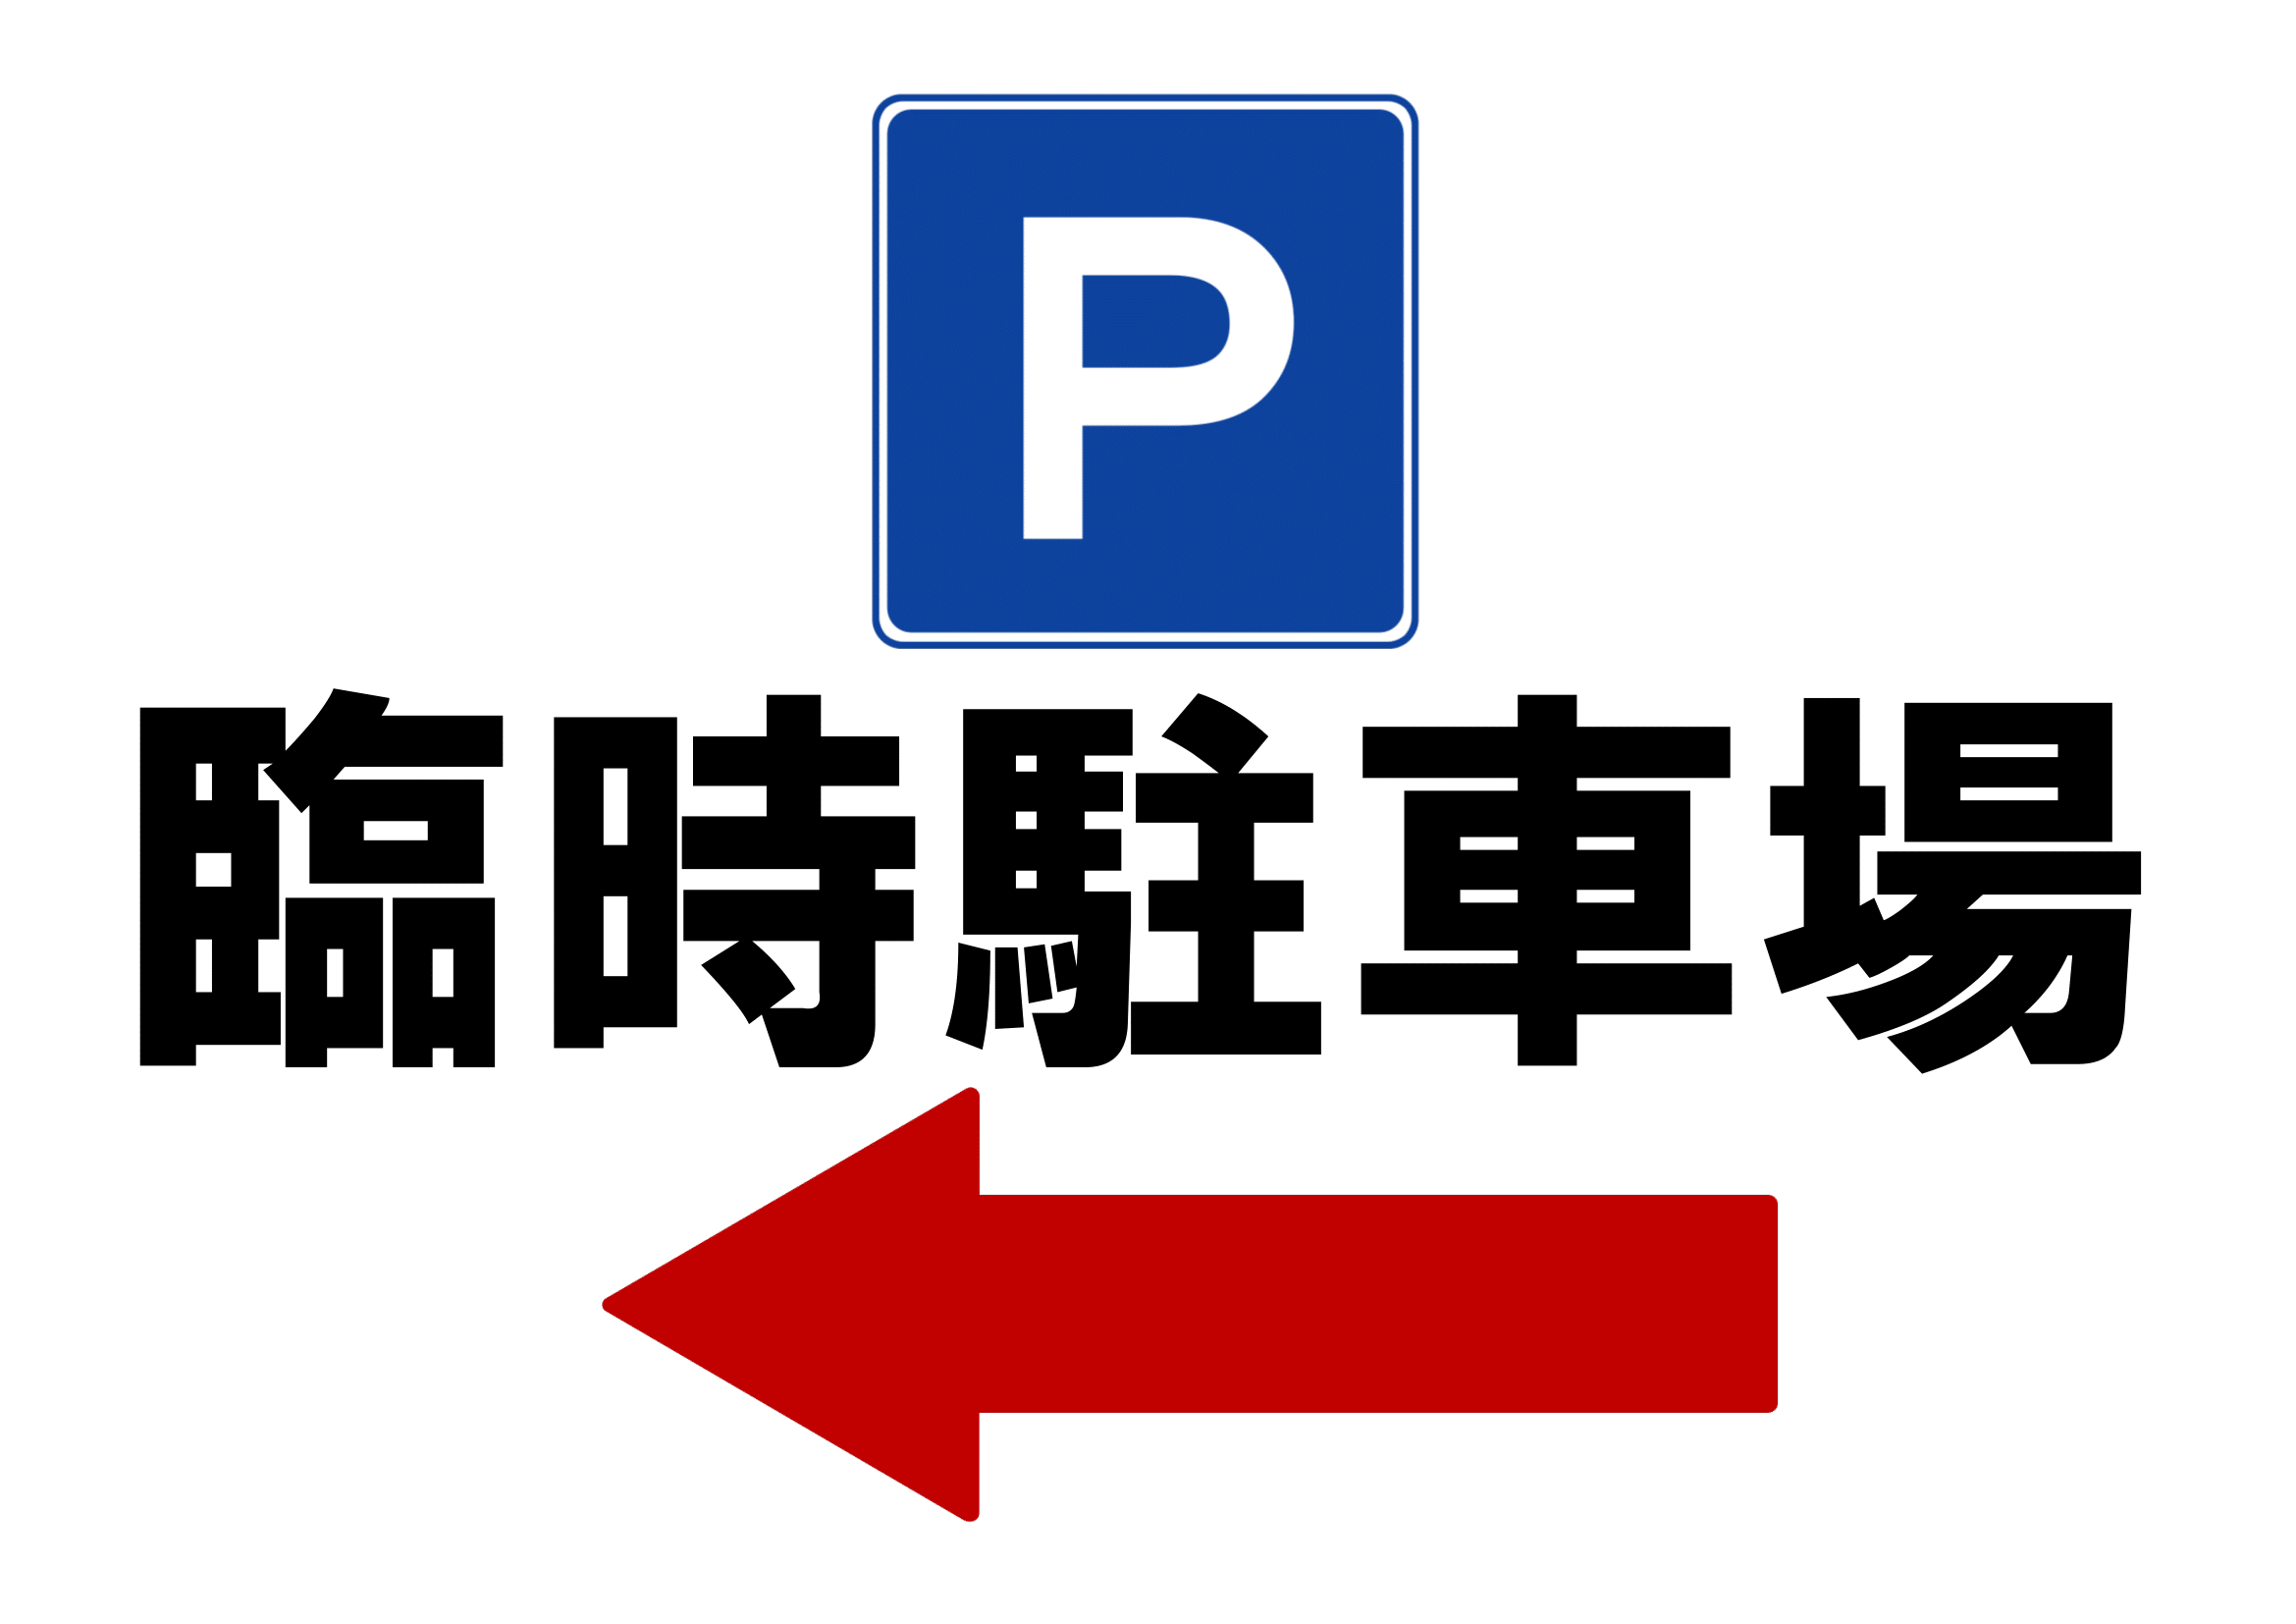 臨時駐車場ご案内の張り紙（Ａ４・ヨコ・方向指示あり・左方向）